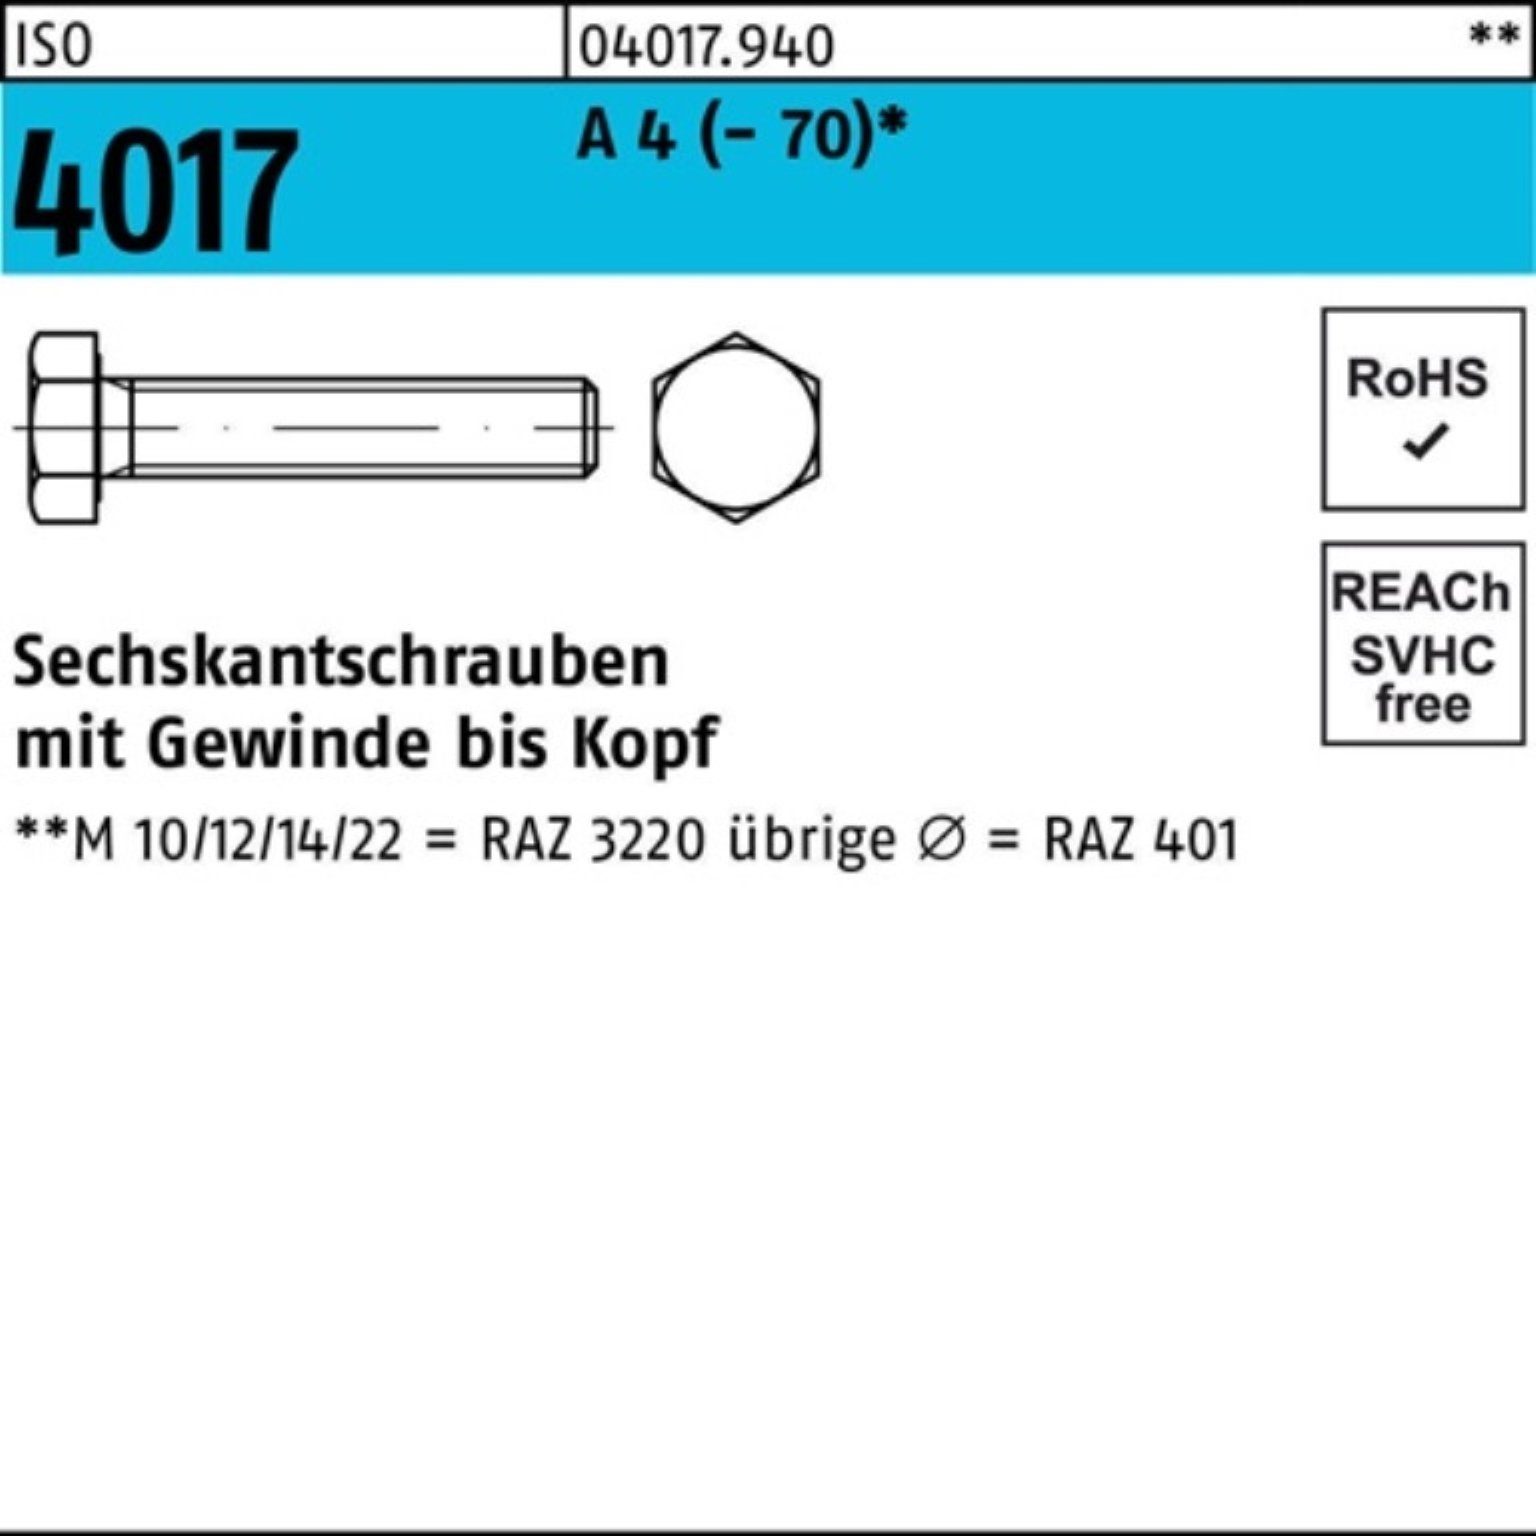 Bufab Sechskantschraube 100er Pack Sechskantschraube ISO 4017 VG M16x 190 A 4 (70) 1 Stück